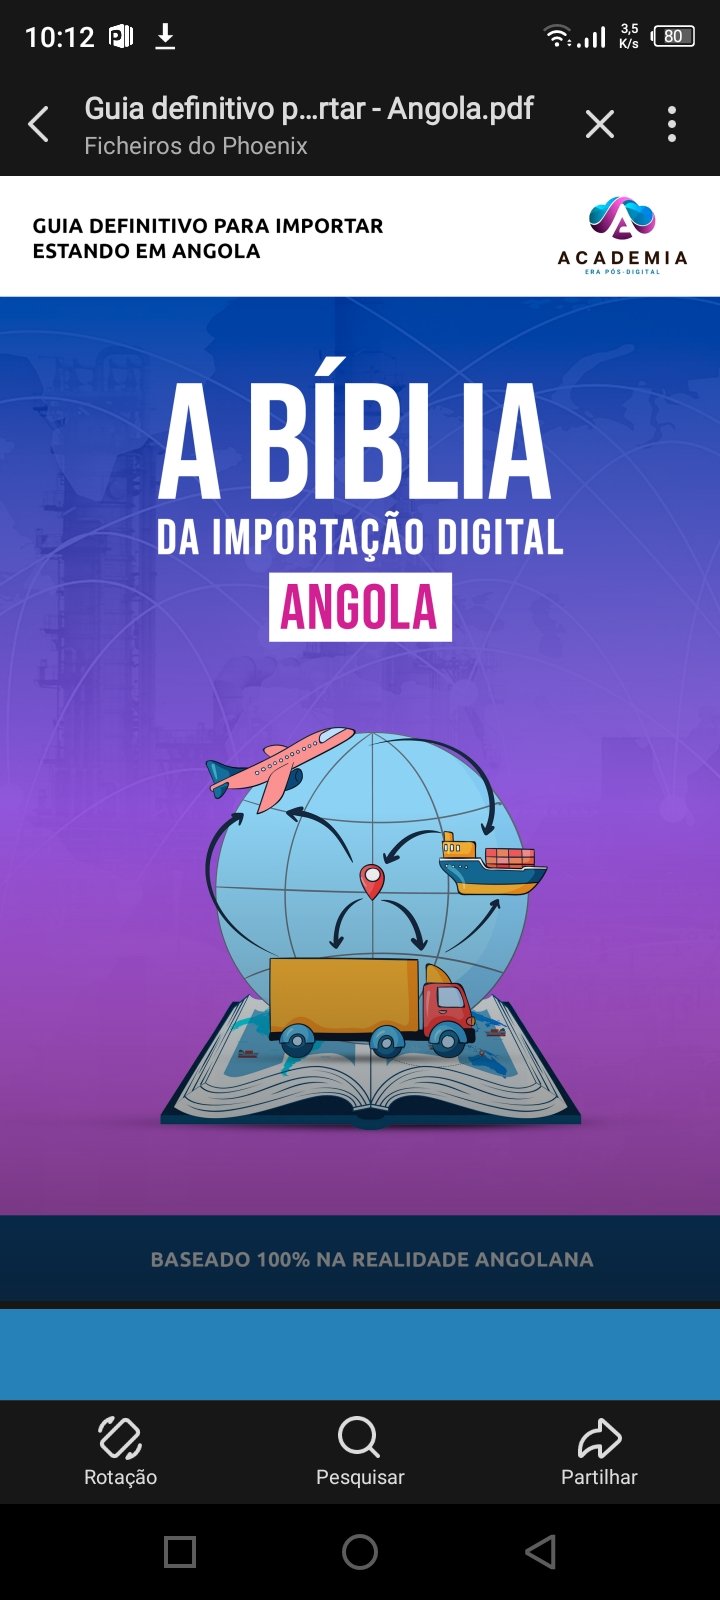 Bíblia de importação Digital de Angola 